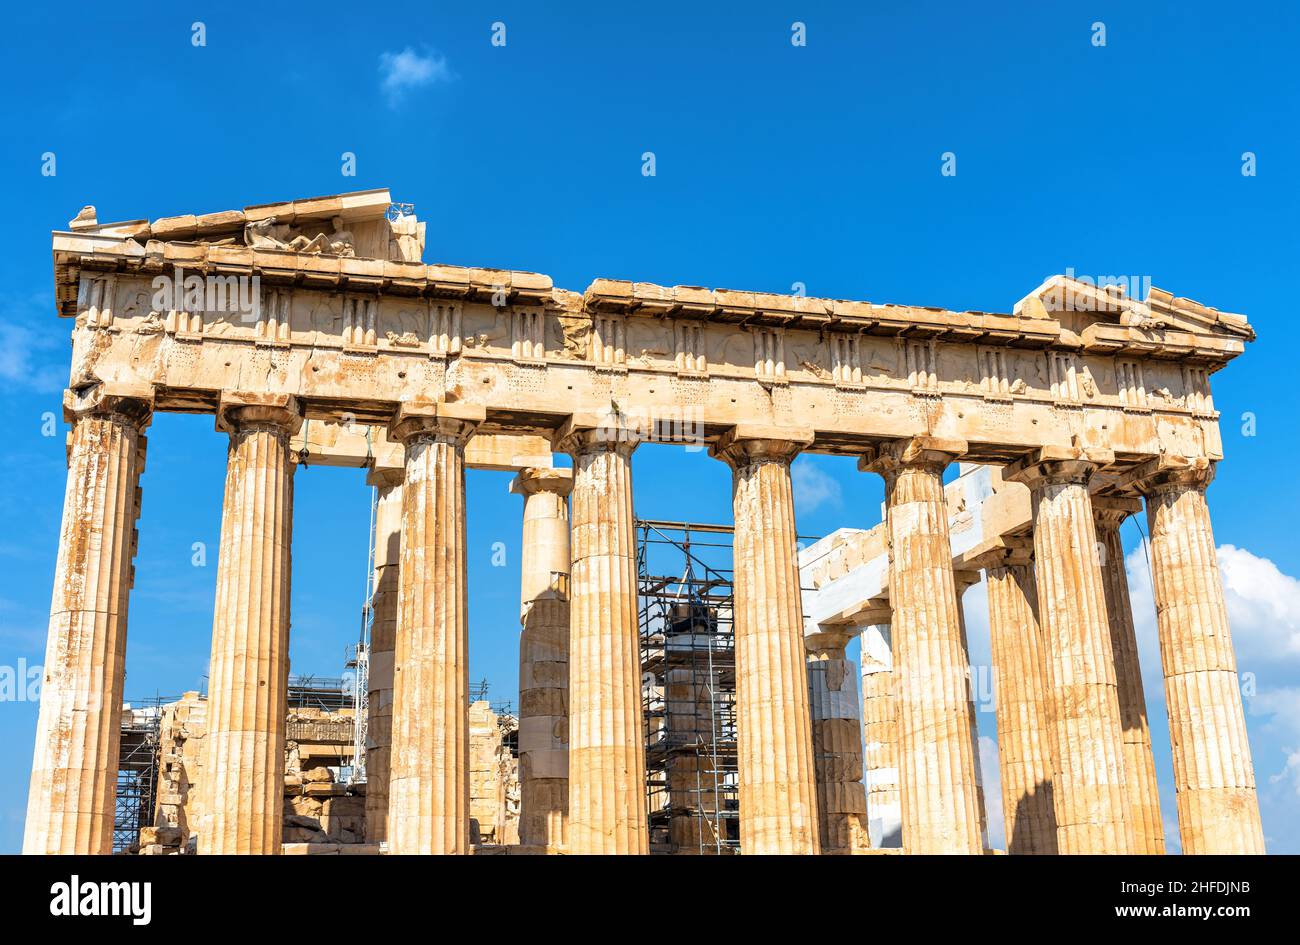 Parthenon auf der Akropolis von Athen, Griechenland, Europa. Es ist das wichtigste historische Wahrzeichen Athens. Berühmte Tempelruinen, antikes griechisches Denkmal. Konzept von tim Stockfoto